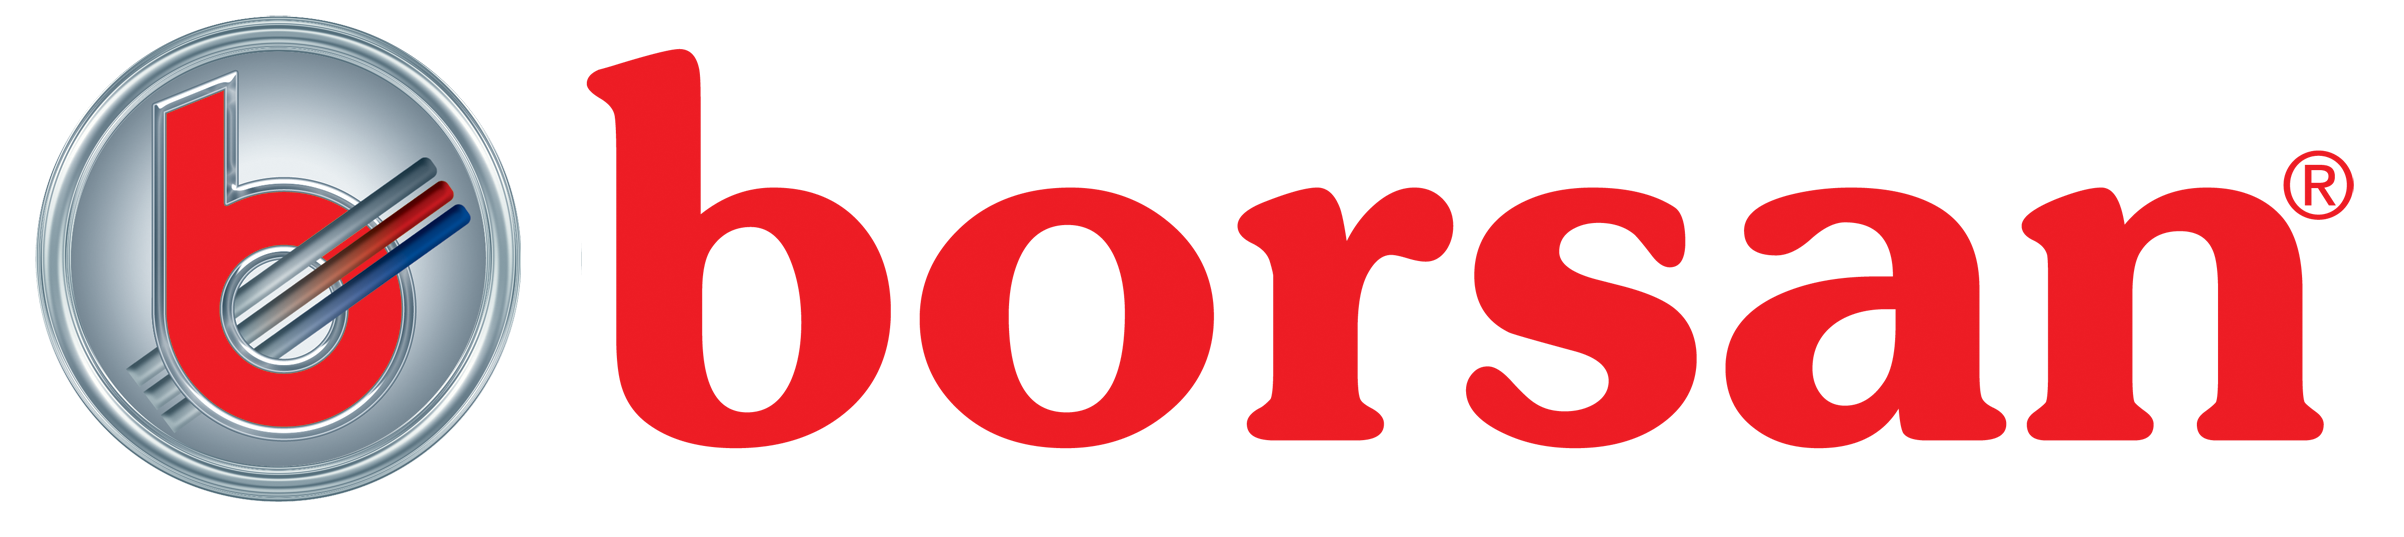 borsan logo 2